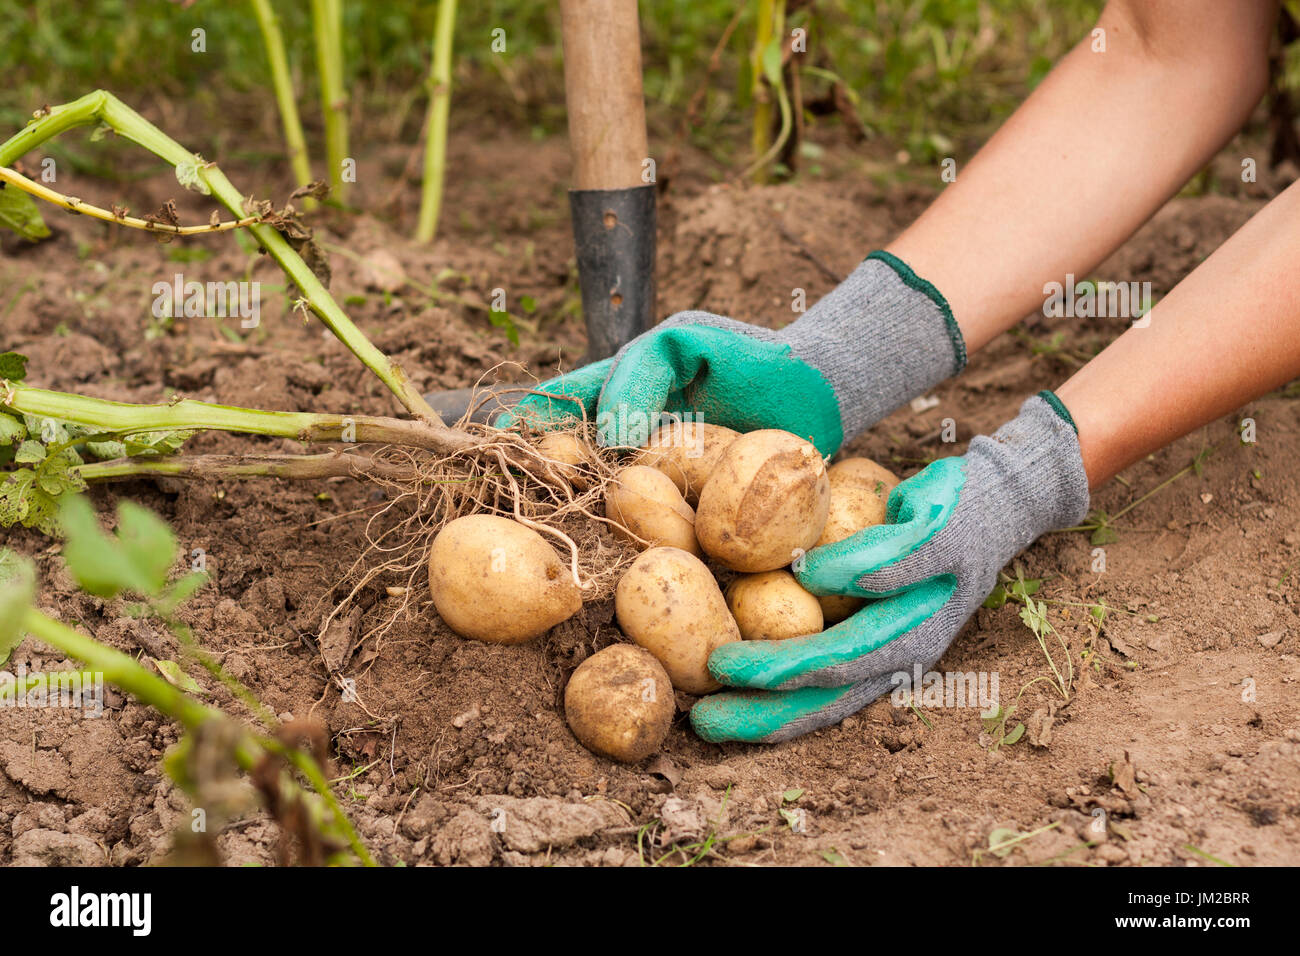 La récolte des pommes. Maintenez la productrice de pommes de terre fraîches de tas dans sa main près du sol. La pomme de terre fraîche. Moment de la récolte, de la saison. Banque D'Images